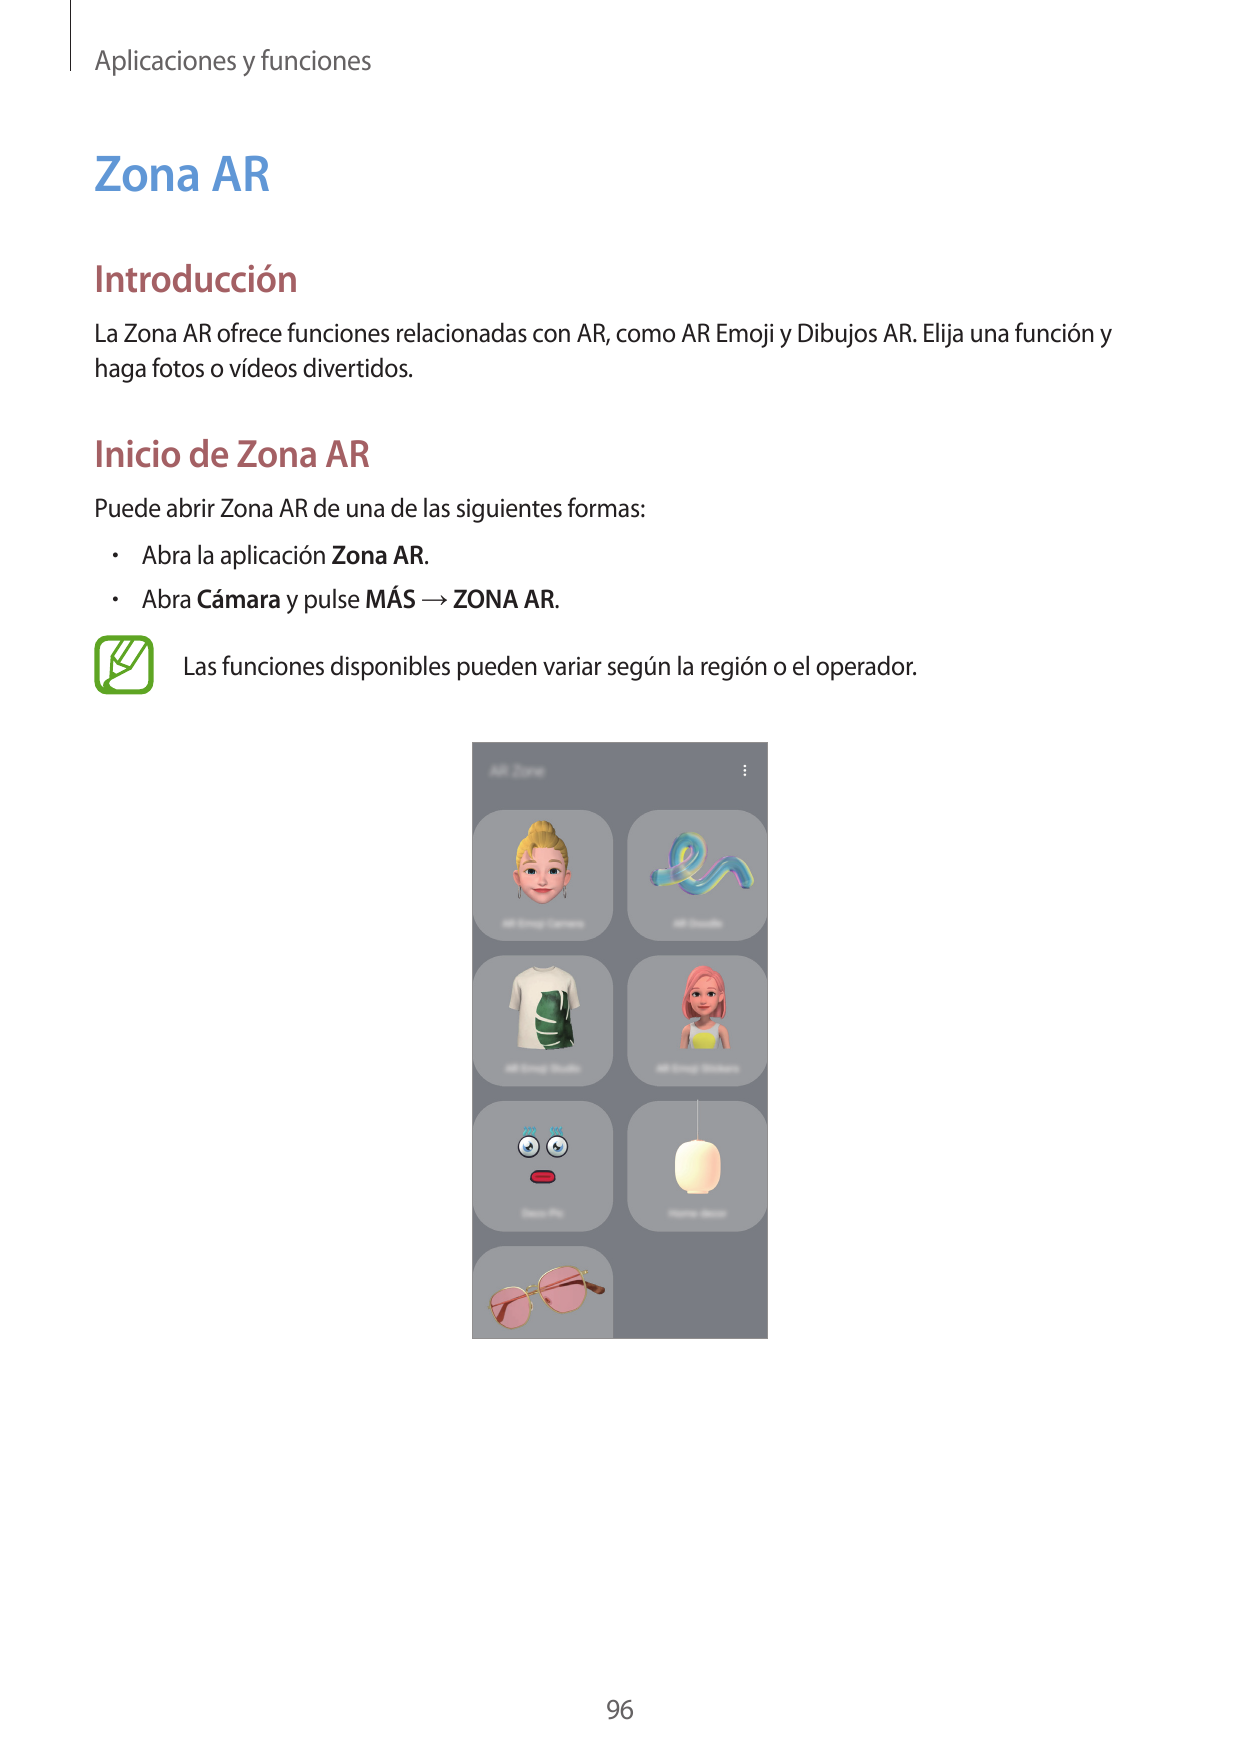 Aplicaciones y funcionesZona ARIntroducciónLa Zona AR ofrece funciones relacionadas con AR, como AR Emoji y Dibujos AR. Elija un